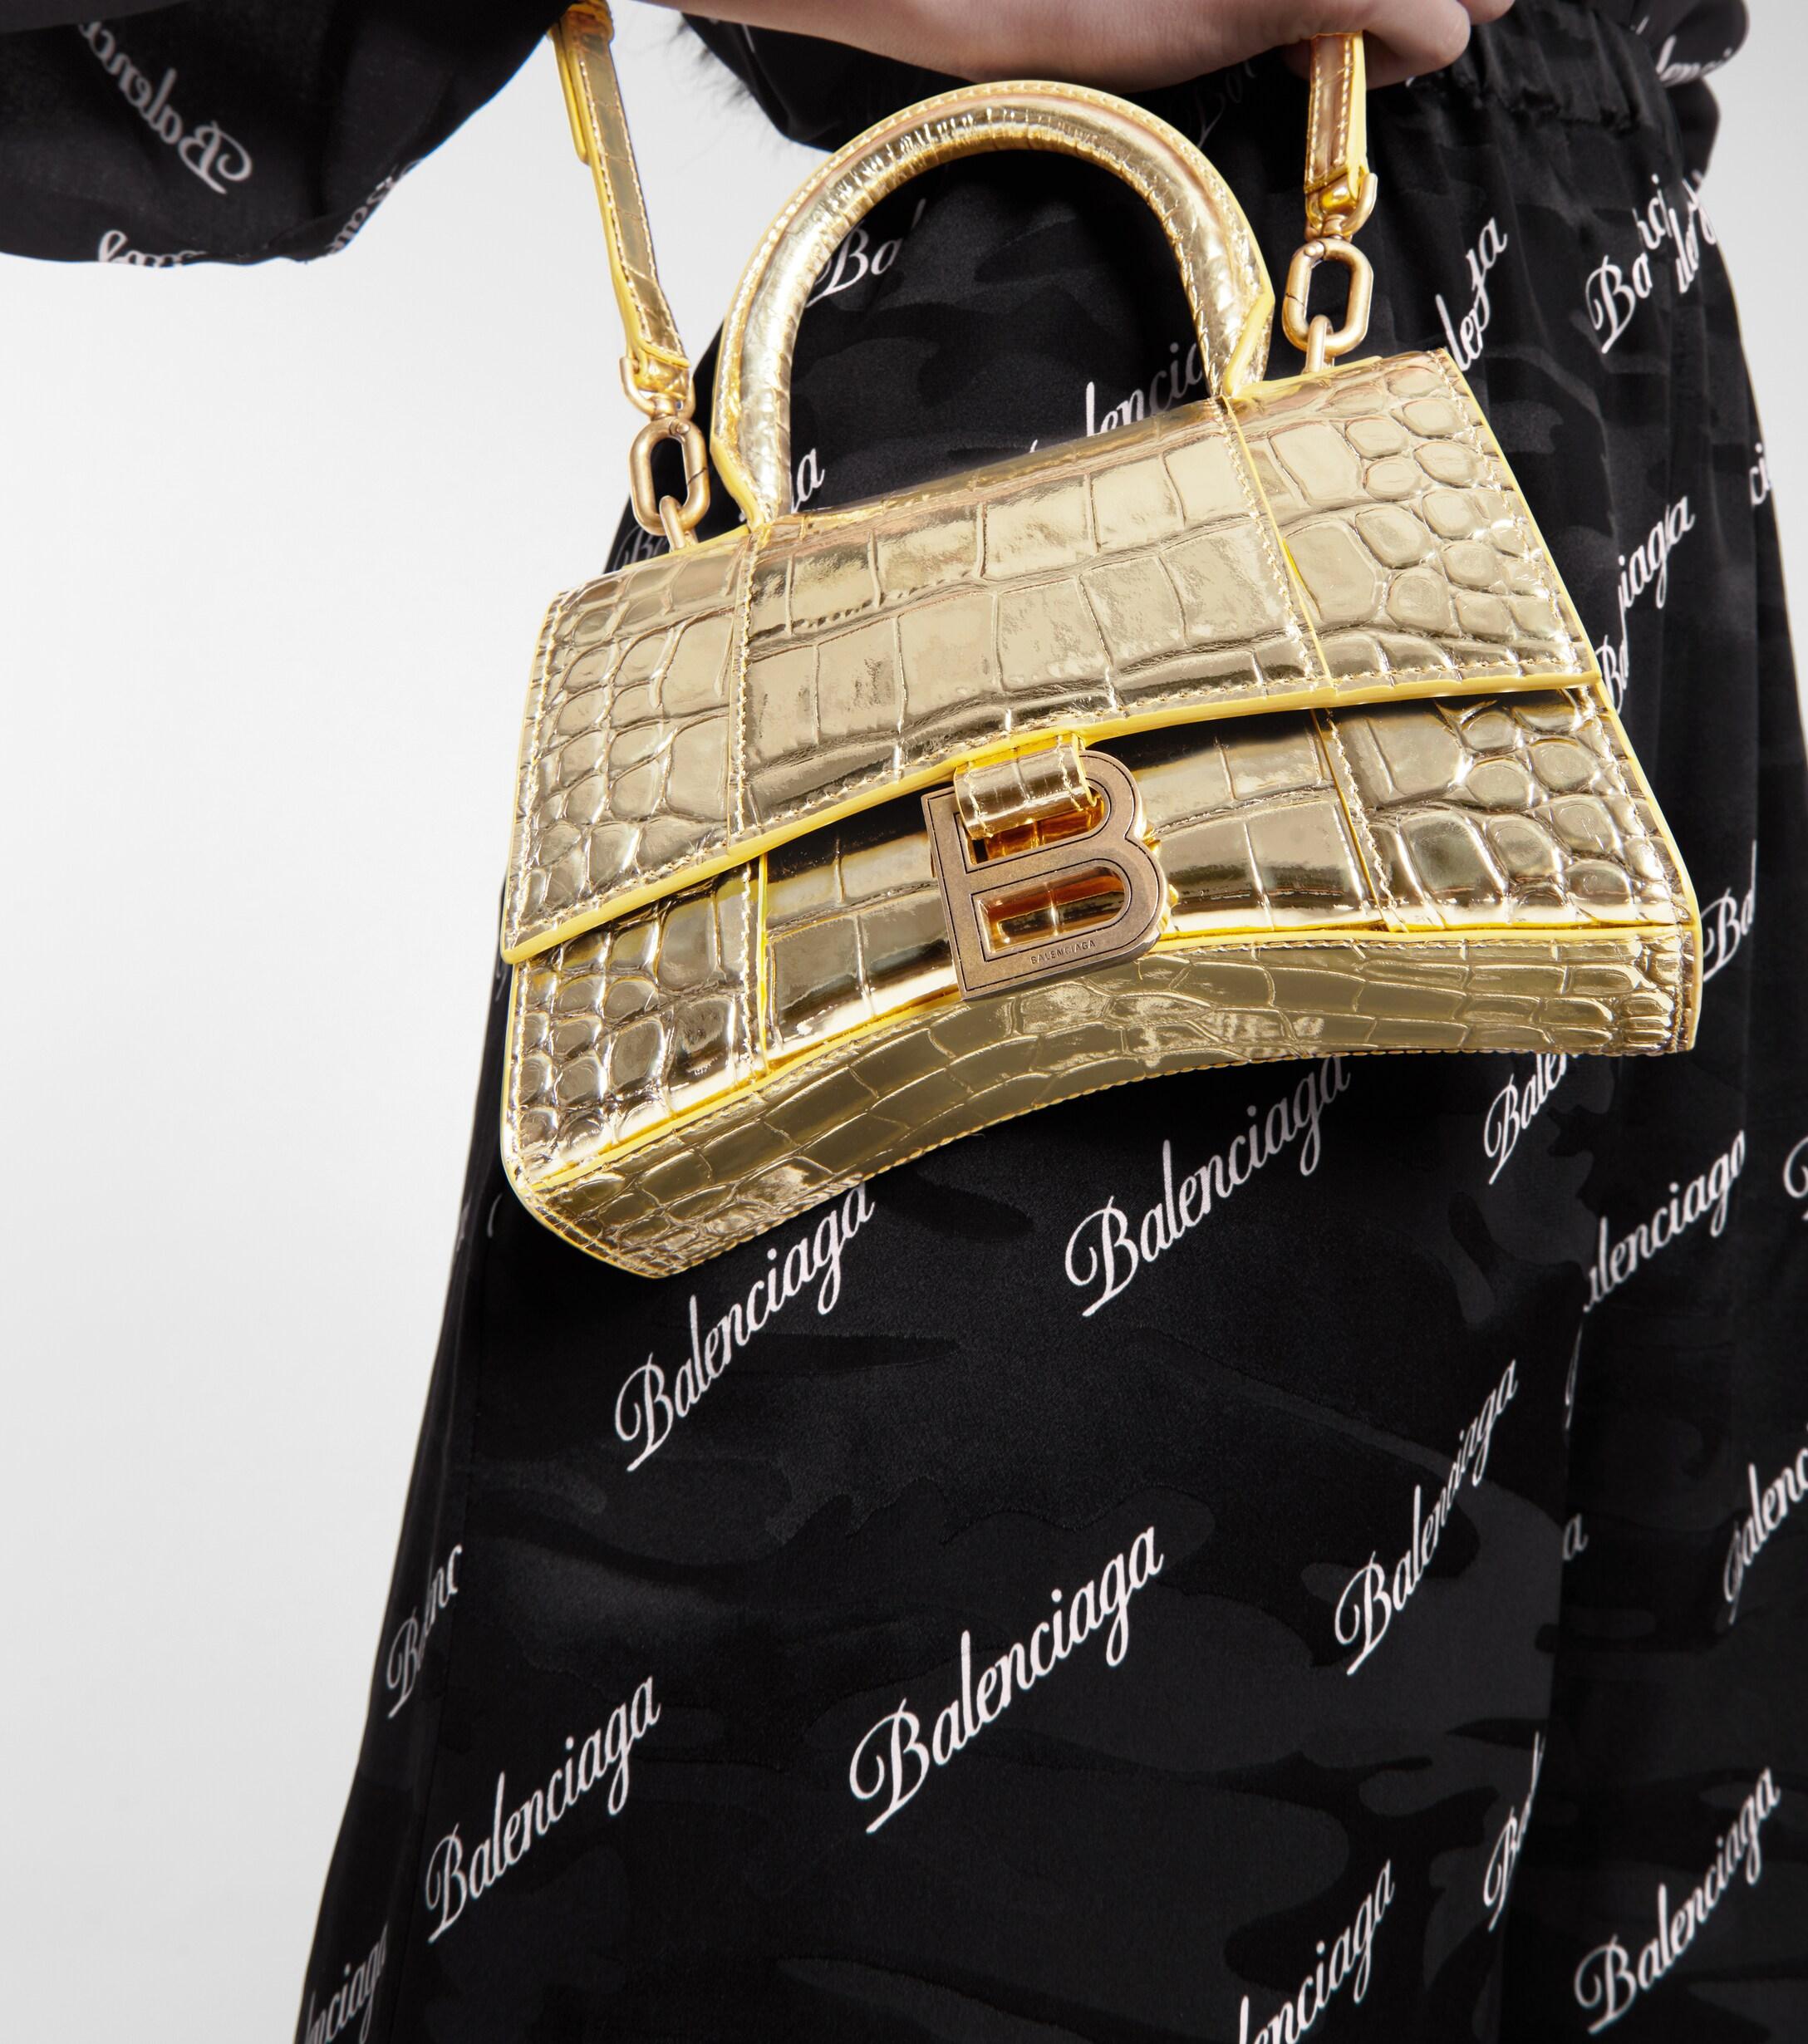 Balenciaga gold hourglass bag women